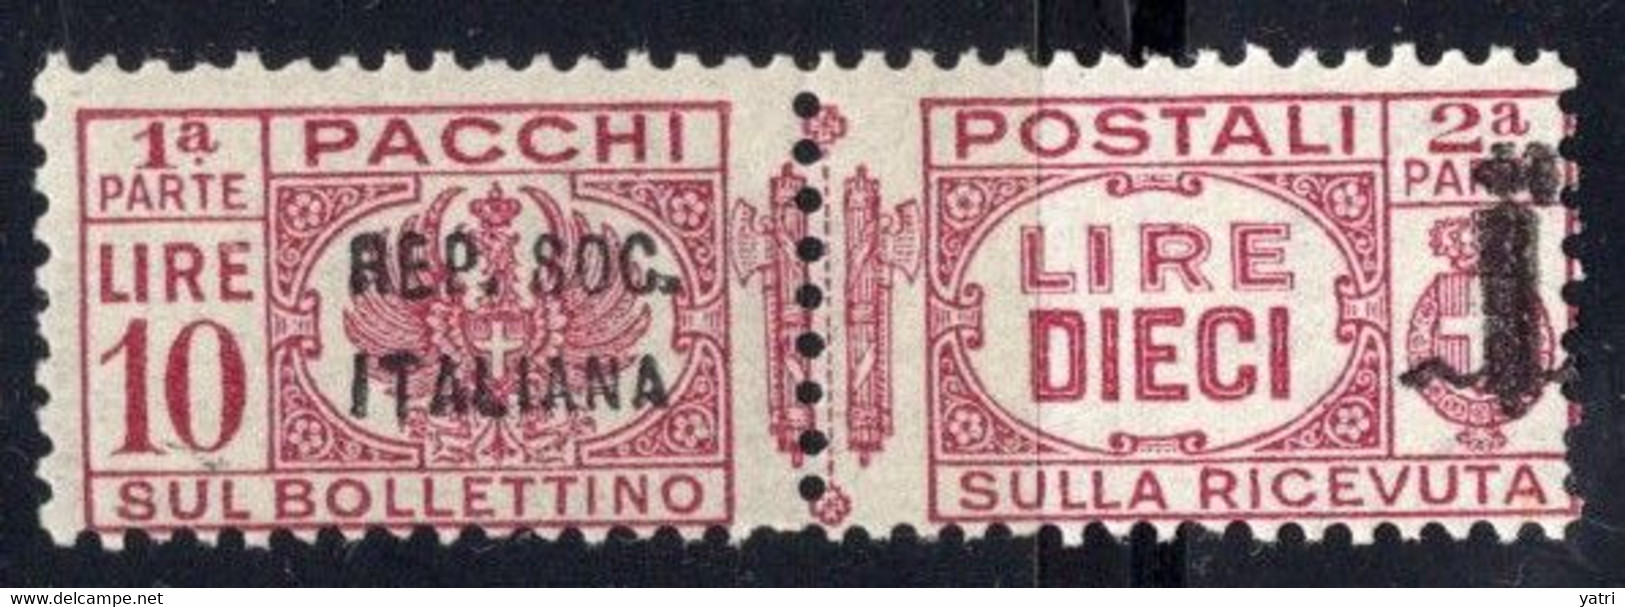 Repubblica Sociale (1944) - Pacchi Postali, 10 Lire ** - Postal Parcels